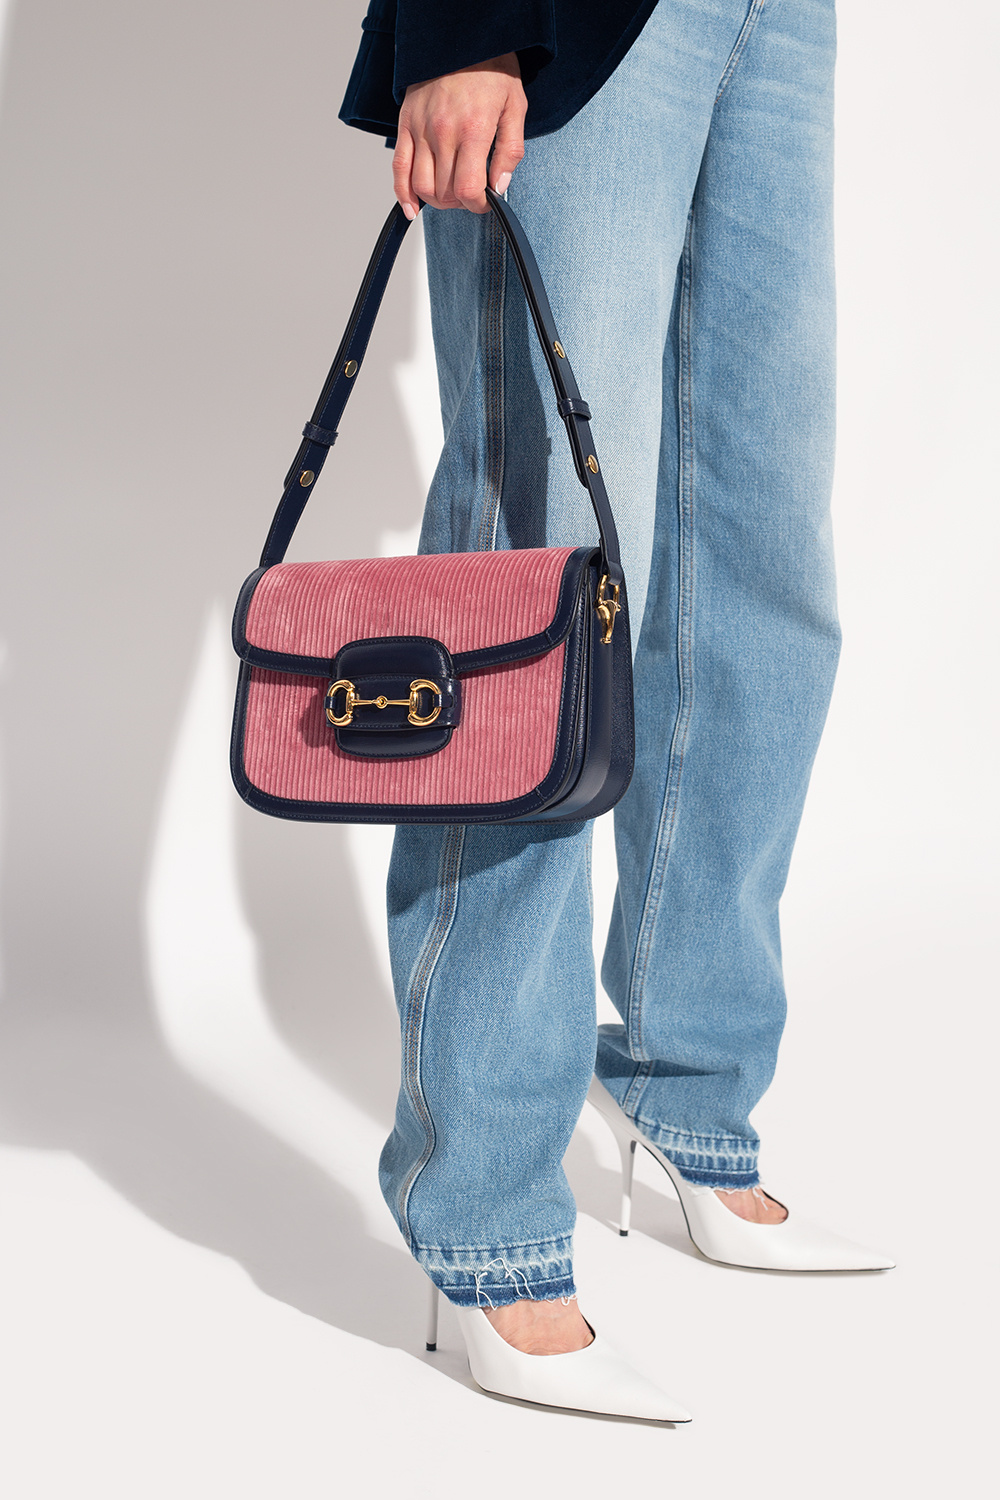 Gucci 'Horsebit 1955 Small' shoulder bag, Women's Bags